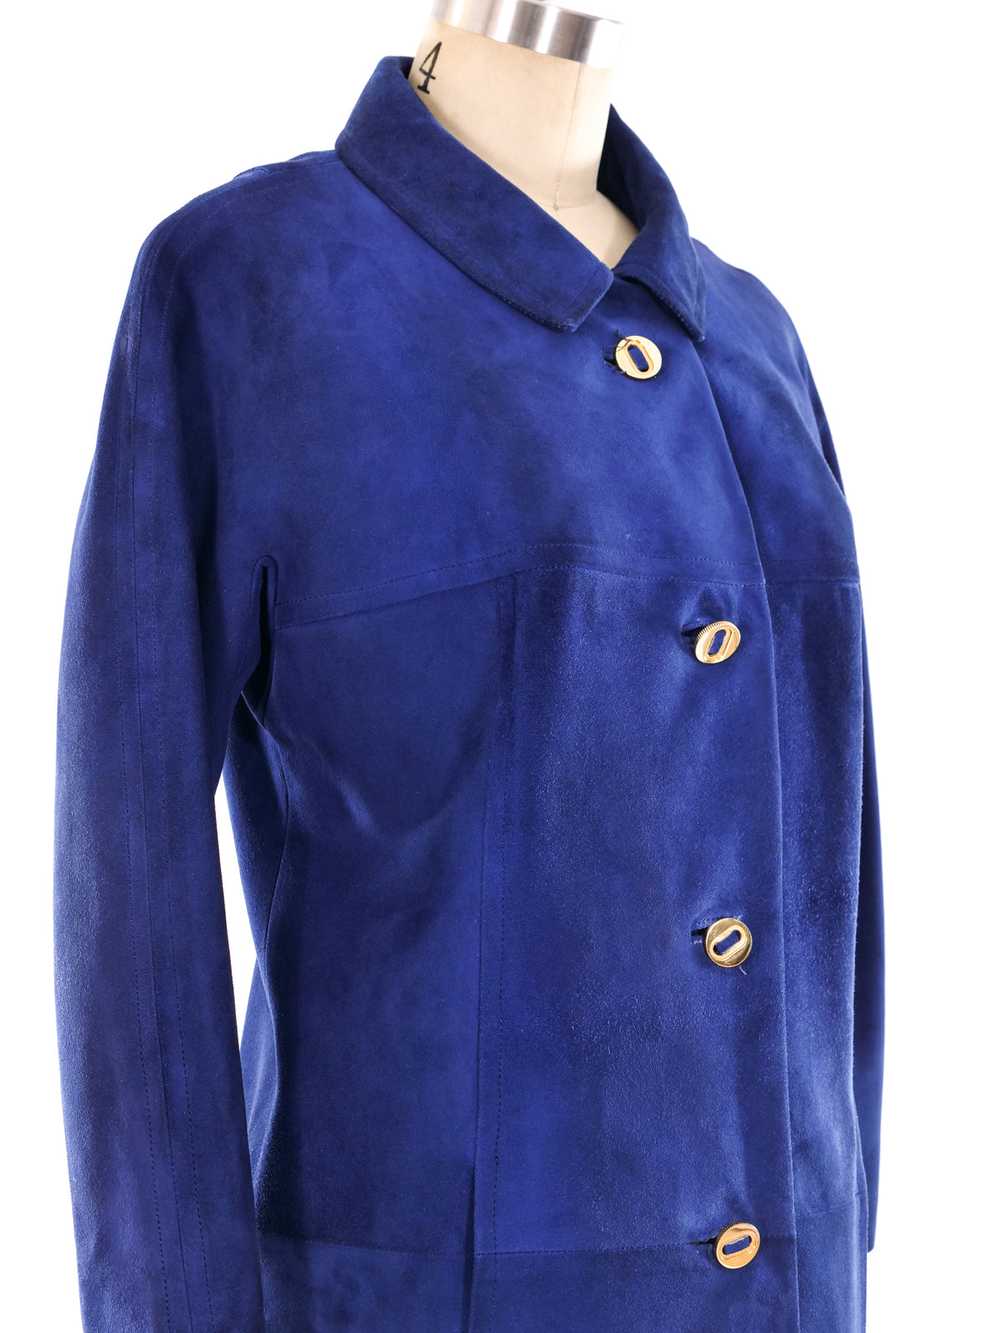 Loewe Blue Suede Jacket - image 2